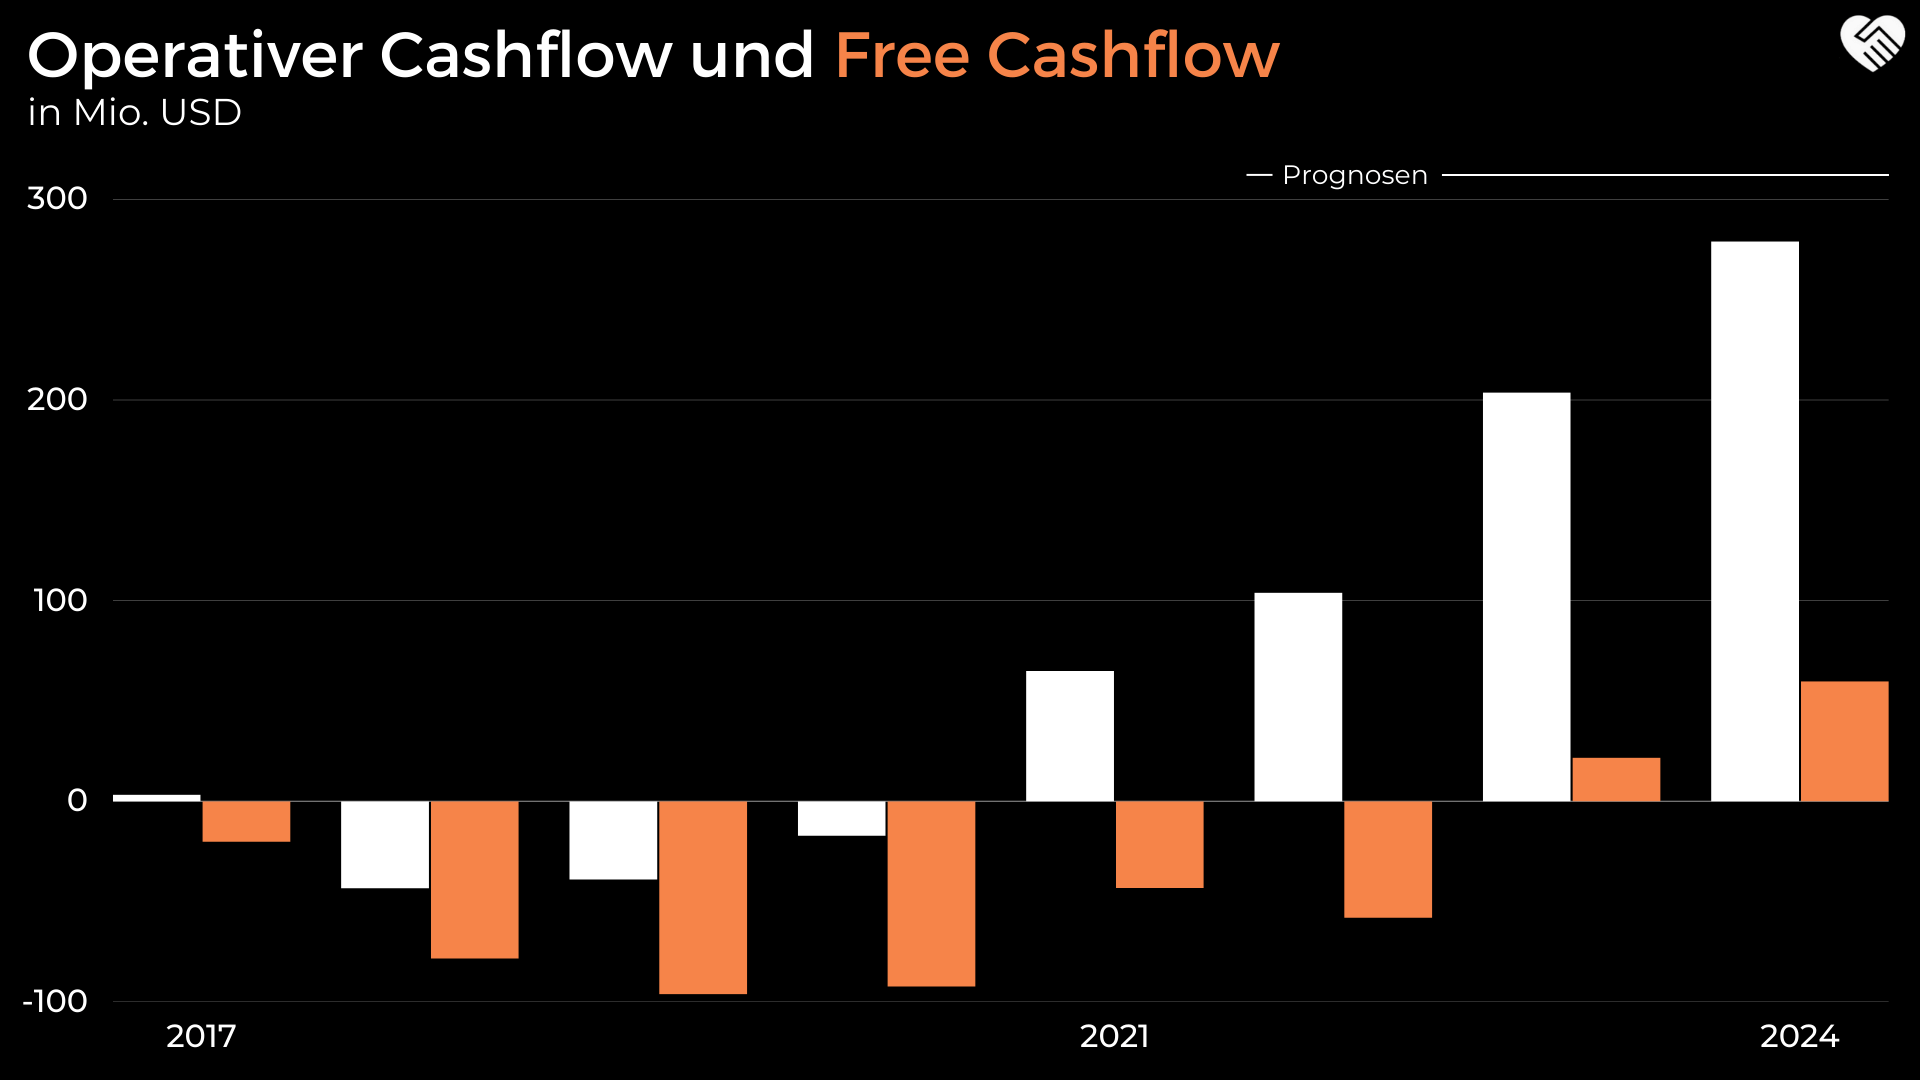 Operativer Cashflow und Free Cashflow Entwicklung bei Cloudflare